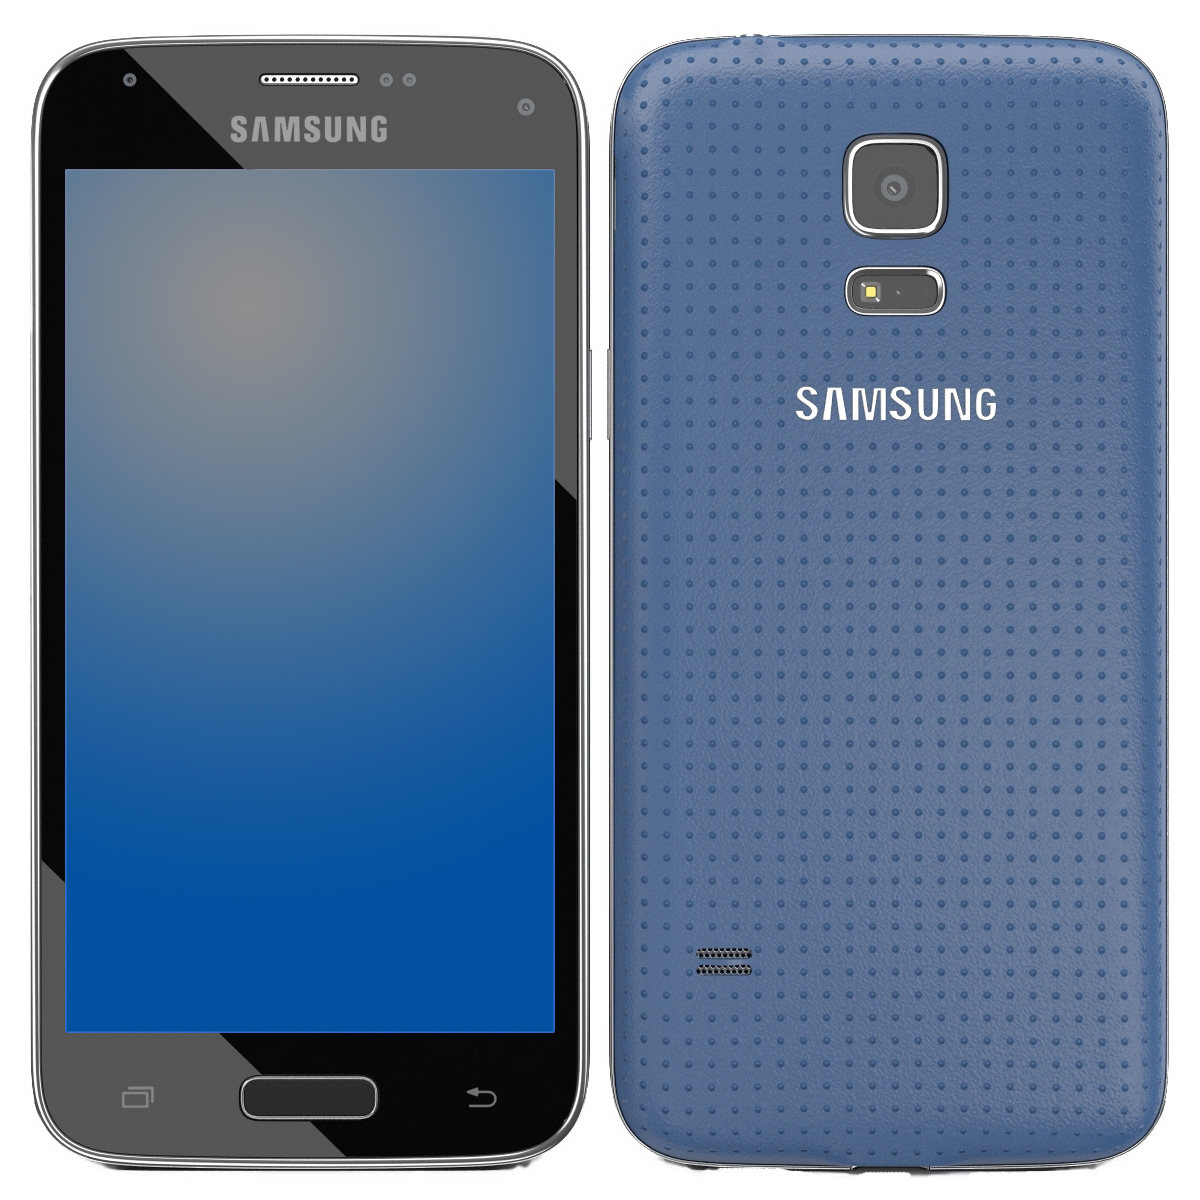 Samsung Galaxy S5 Mini blau - Onhe Vertrag